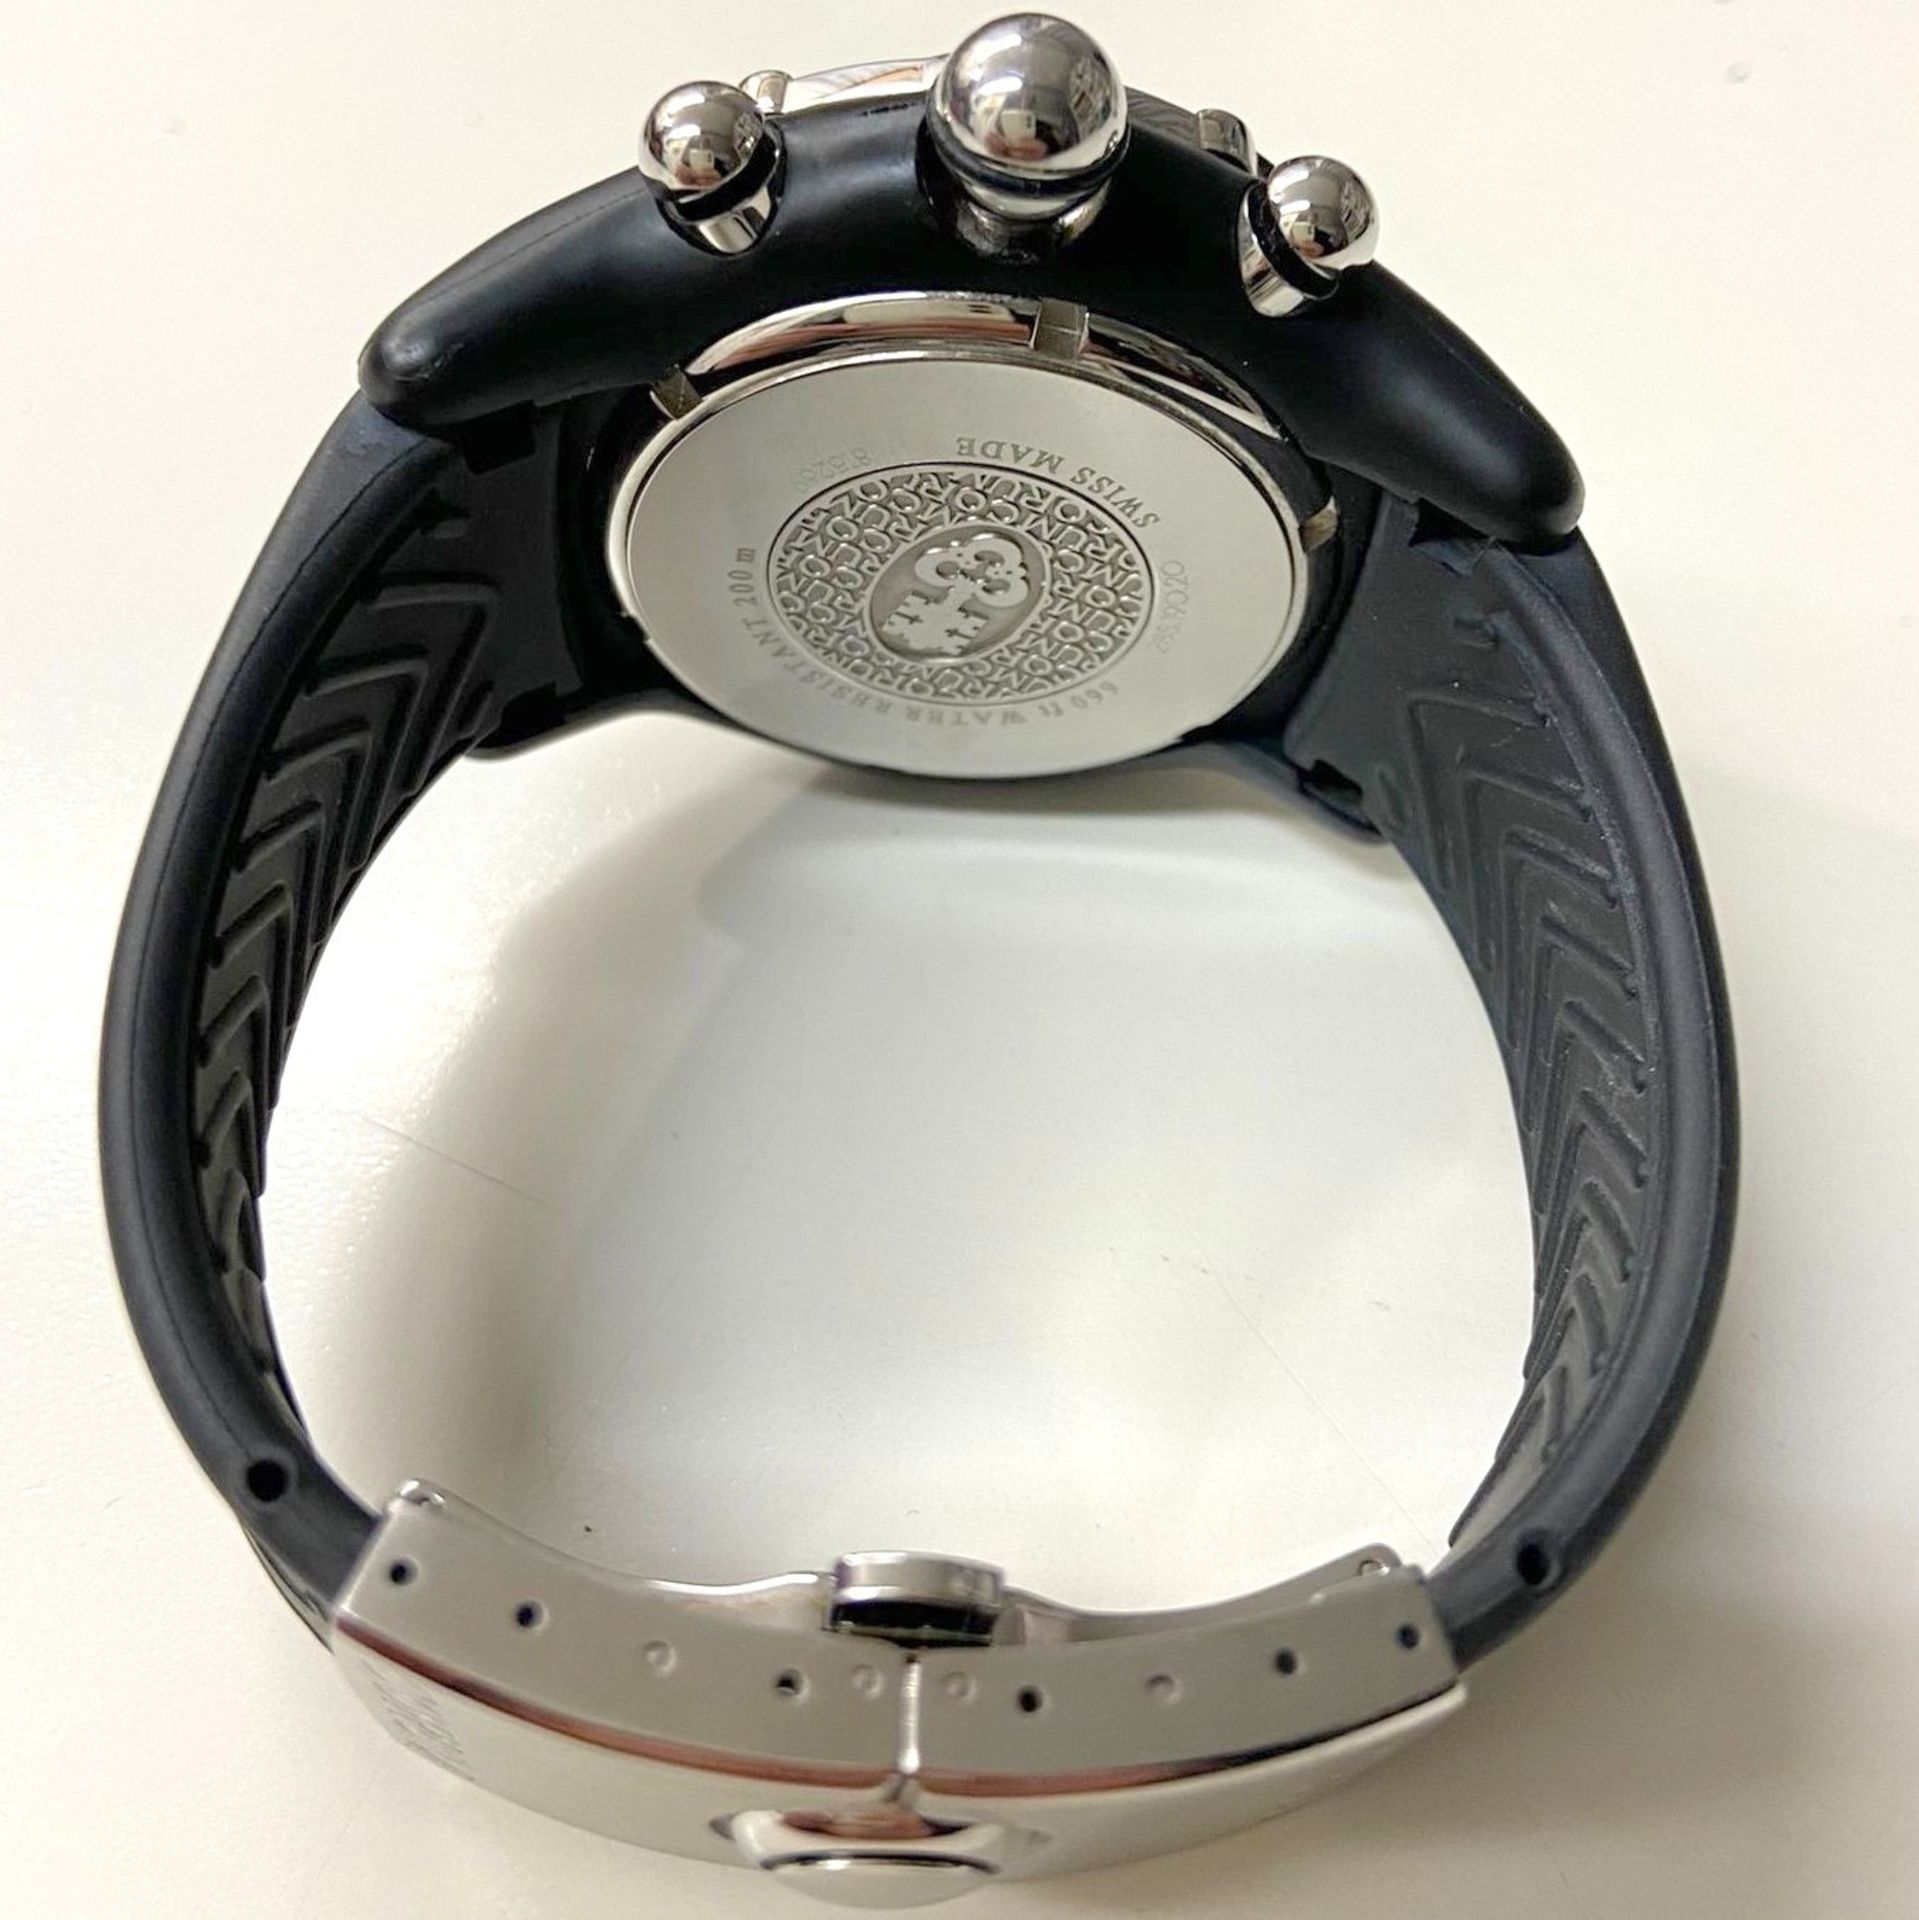 Corum / Midnight Chronograph Diver Taucher - Gentlemen's Steel Wrist Watch - Image 2 of 2